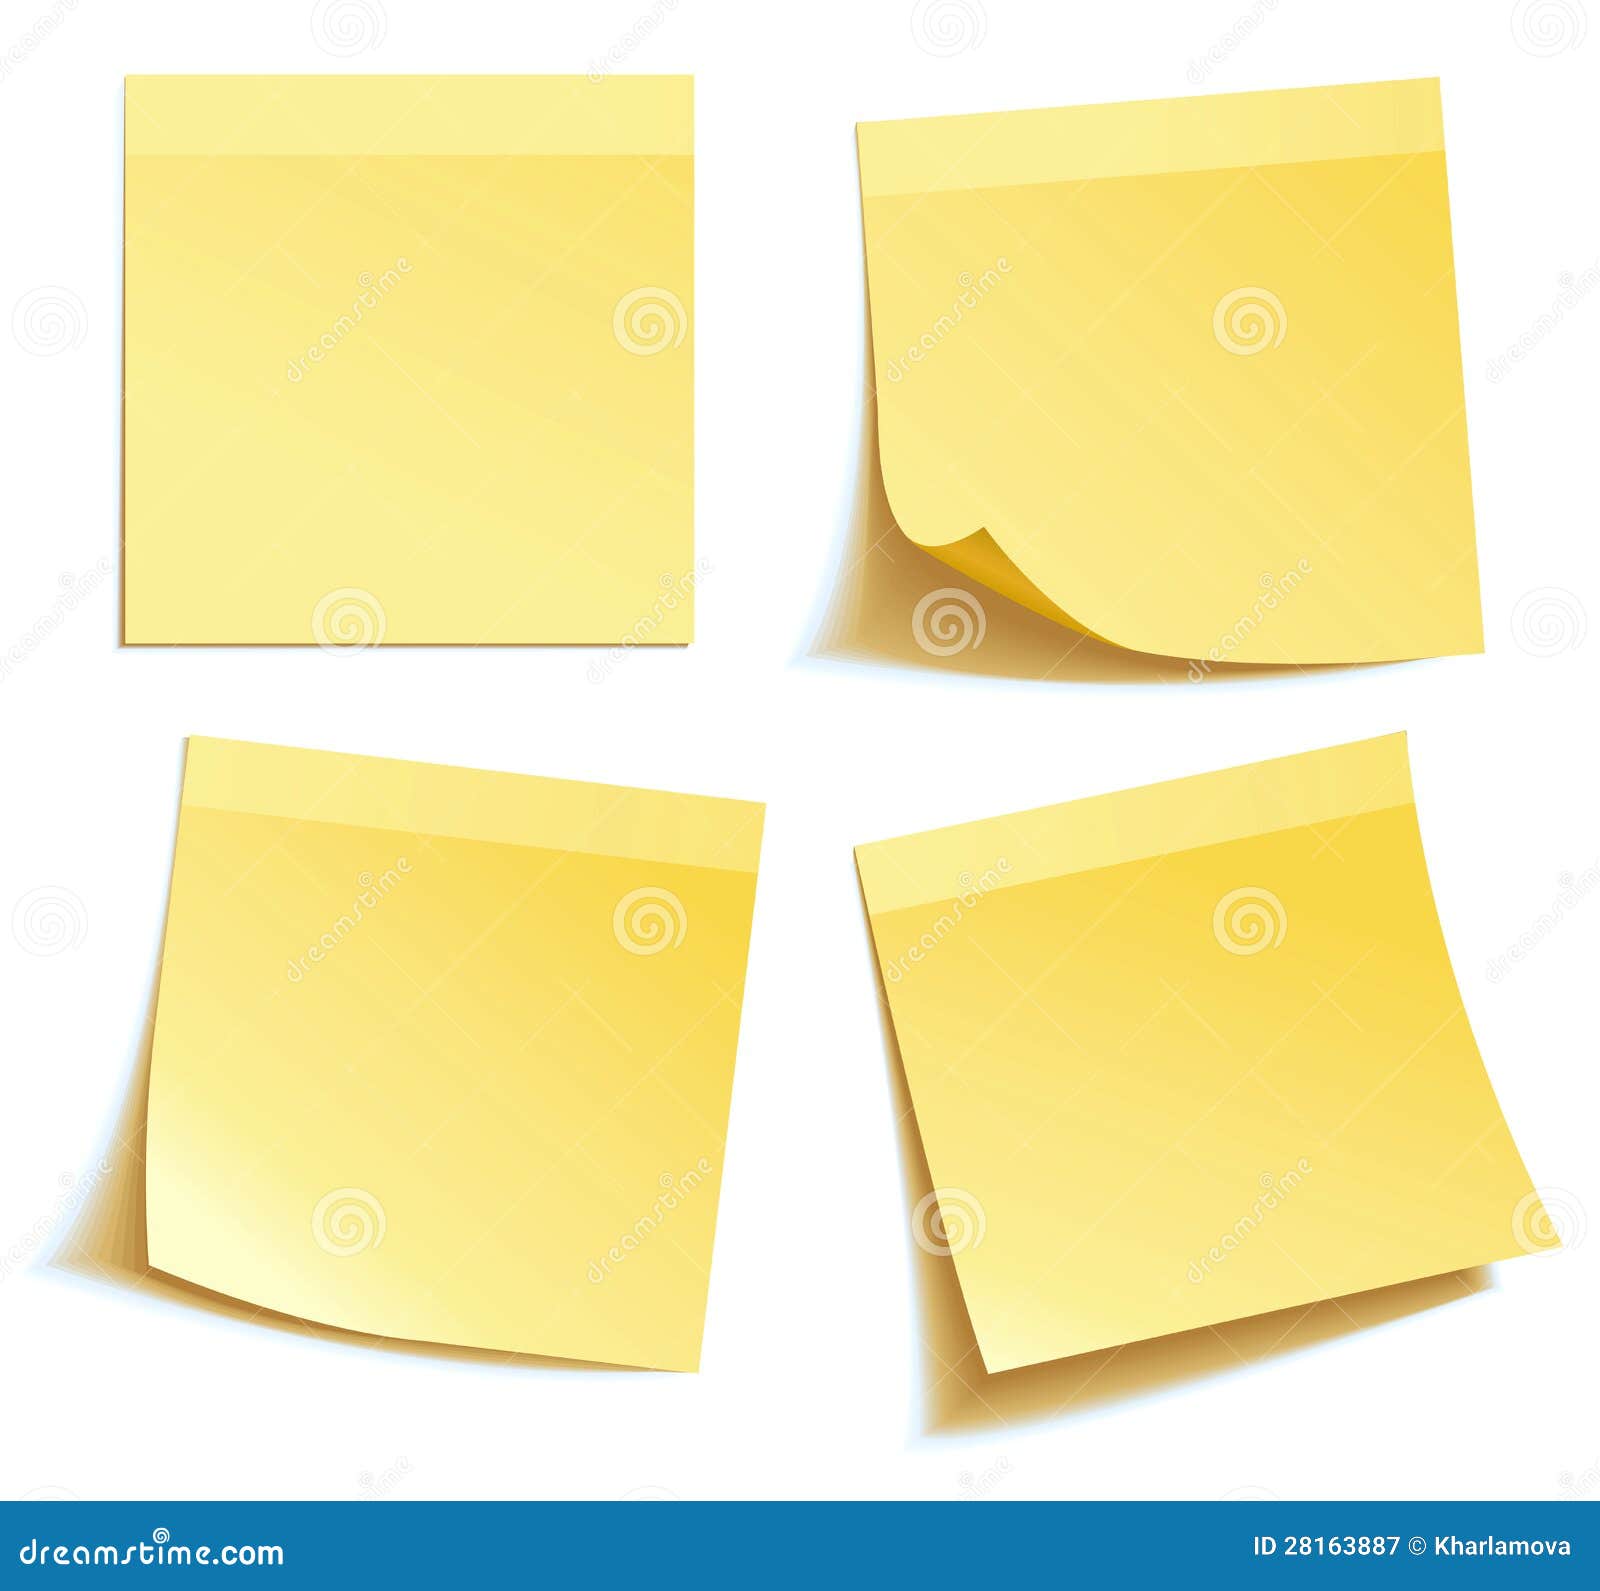 yellow stick note